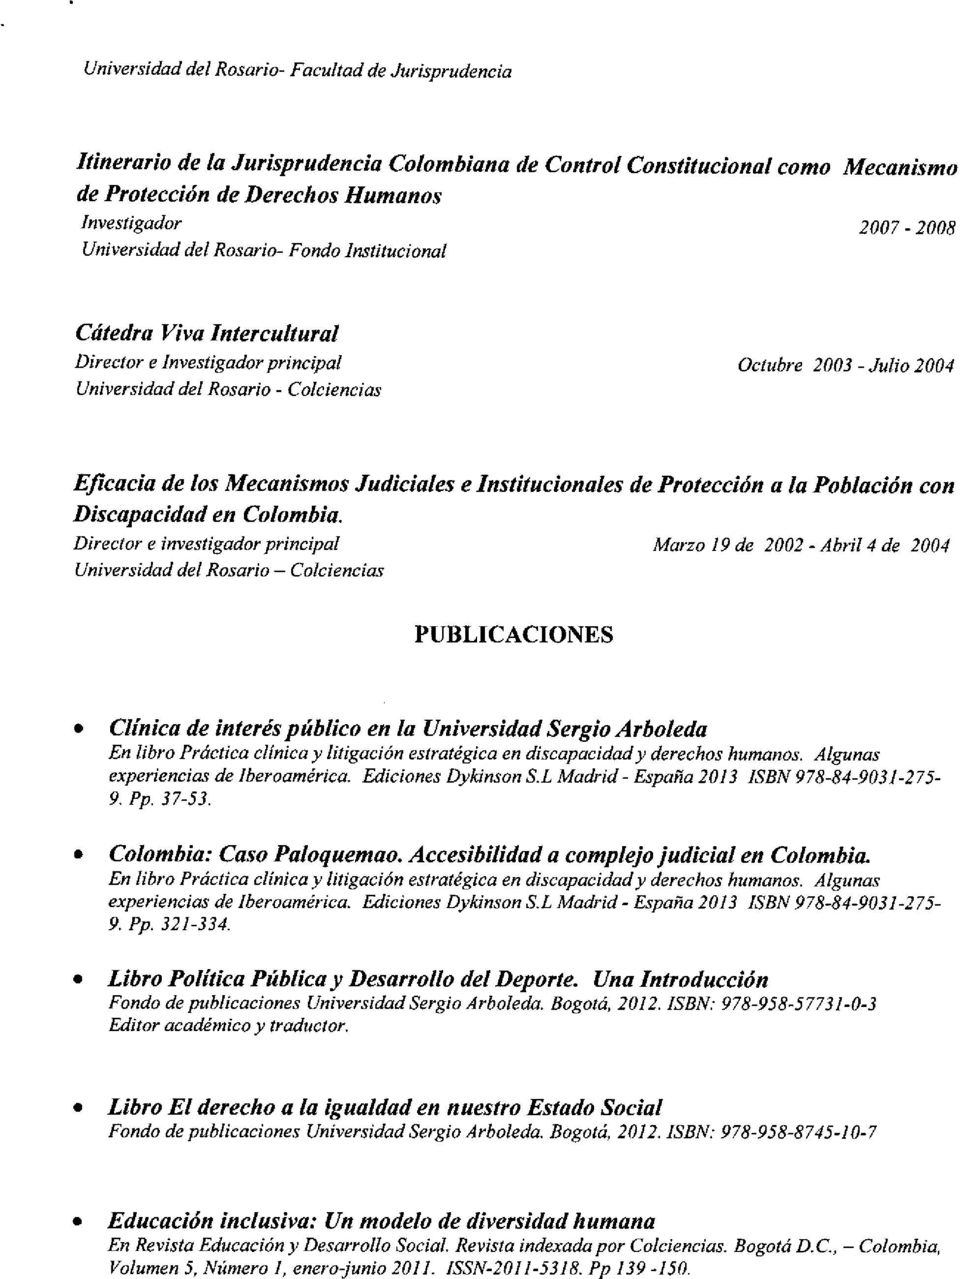 Judiciales e Institucionales de Protección a la Población con Discapacidad en Colombia.